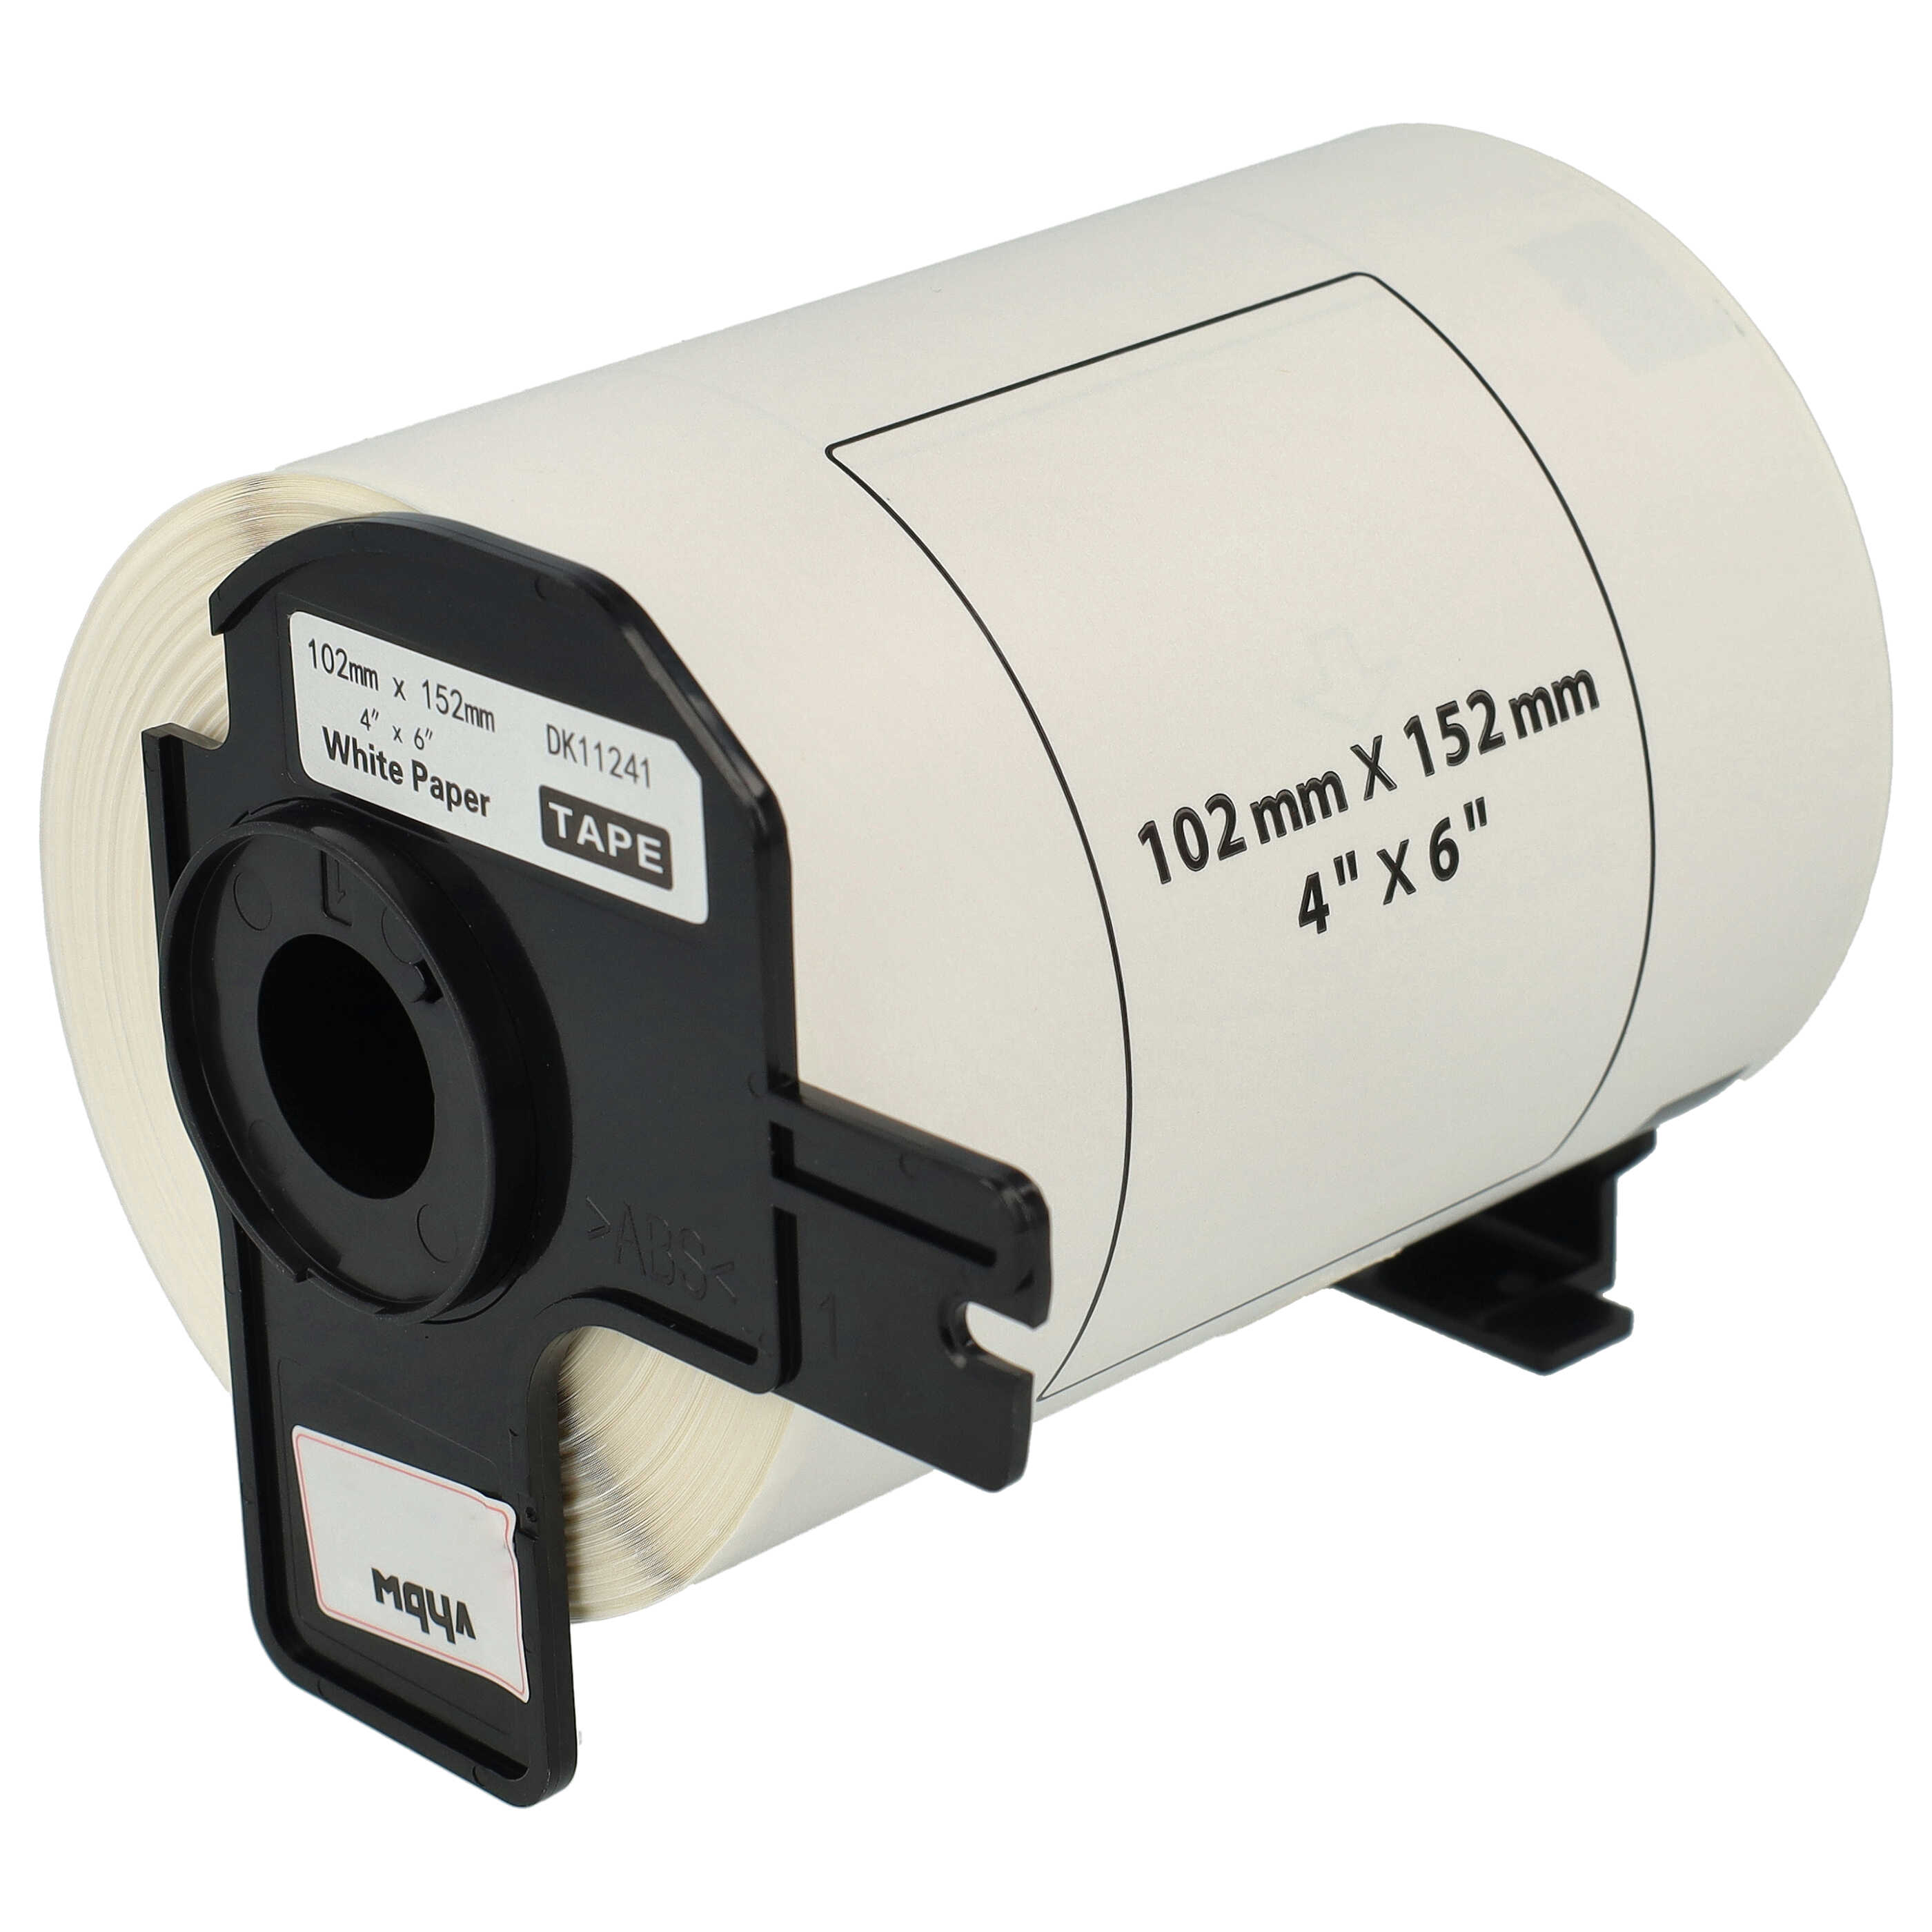 Étiquettes remplacent Brother DK-11241 pour imprimante étiqueteuse - standard 102mm x 152mm + support